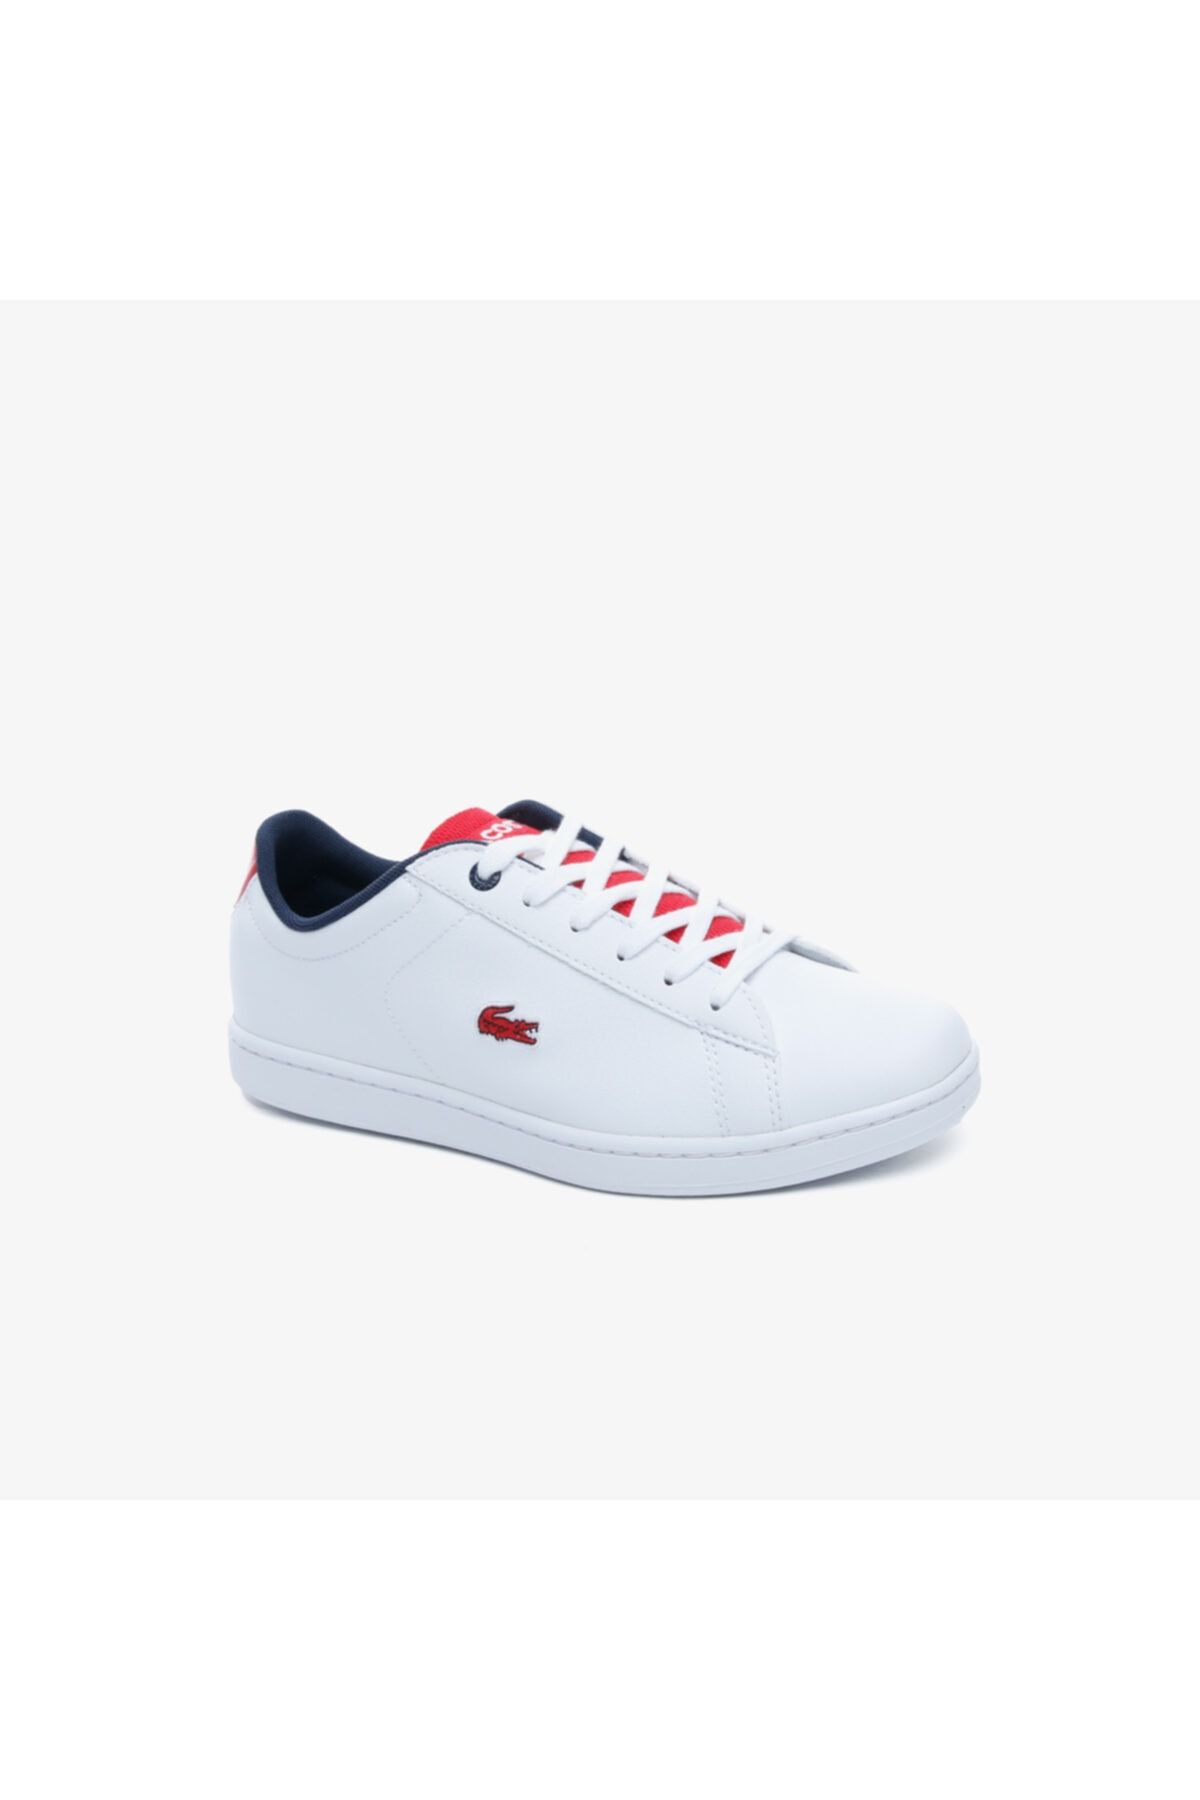 Lacoste Carnaby Evo 120 2 Kadın Beyaz- Kırmızı Sneaker